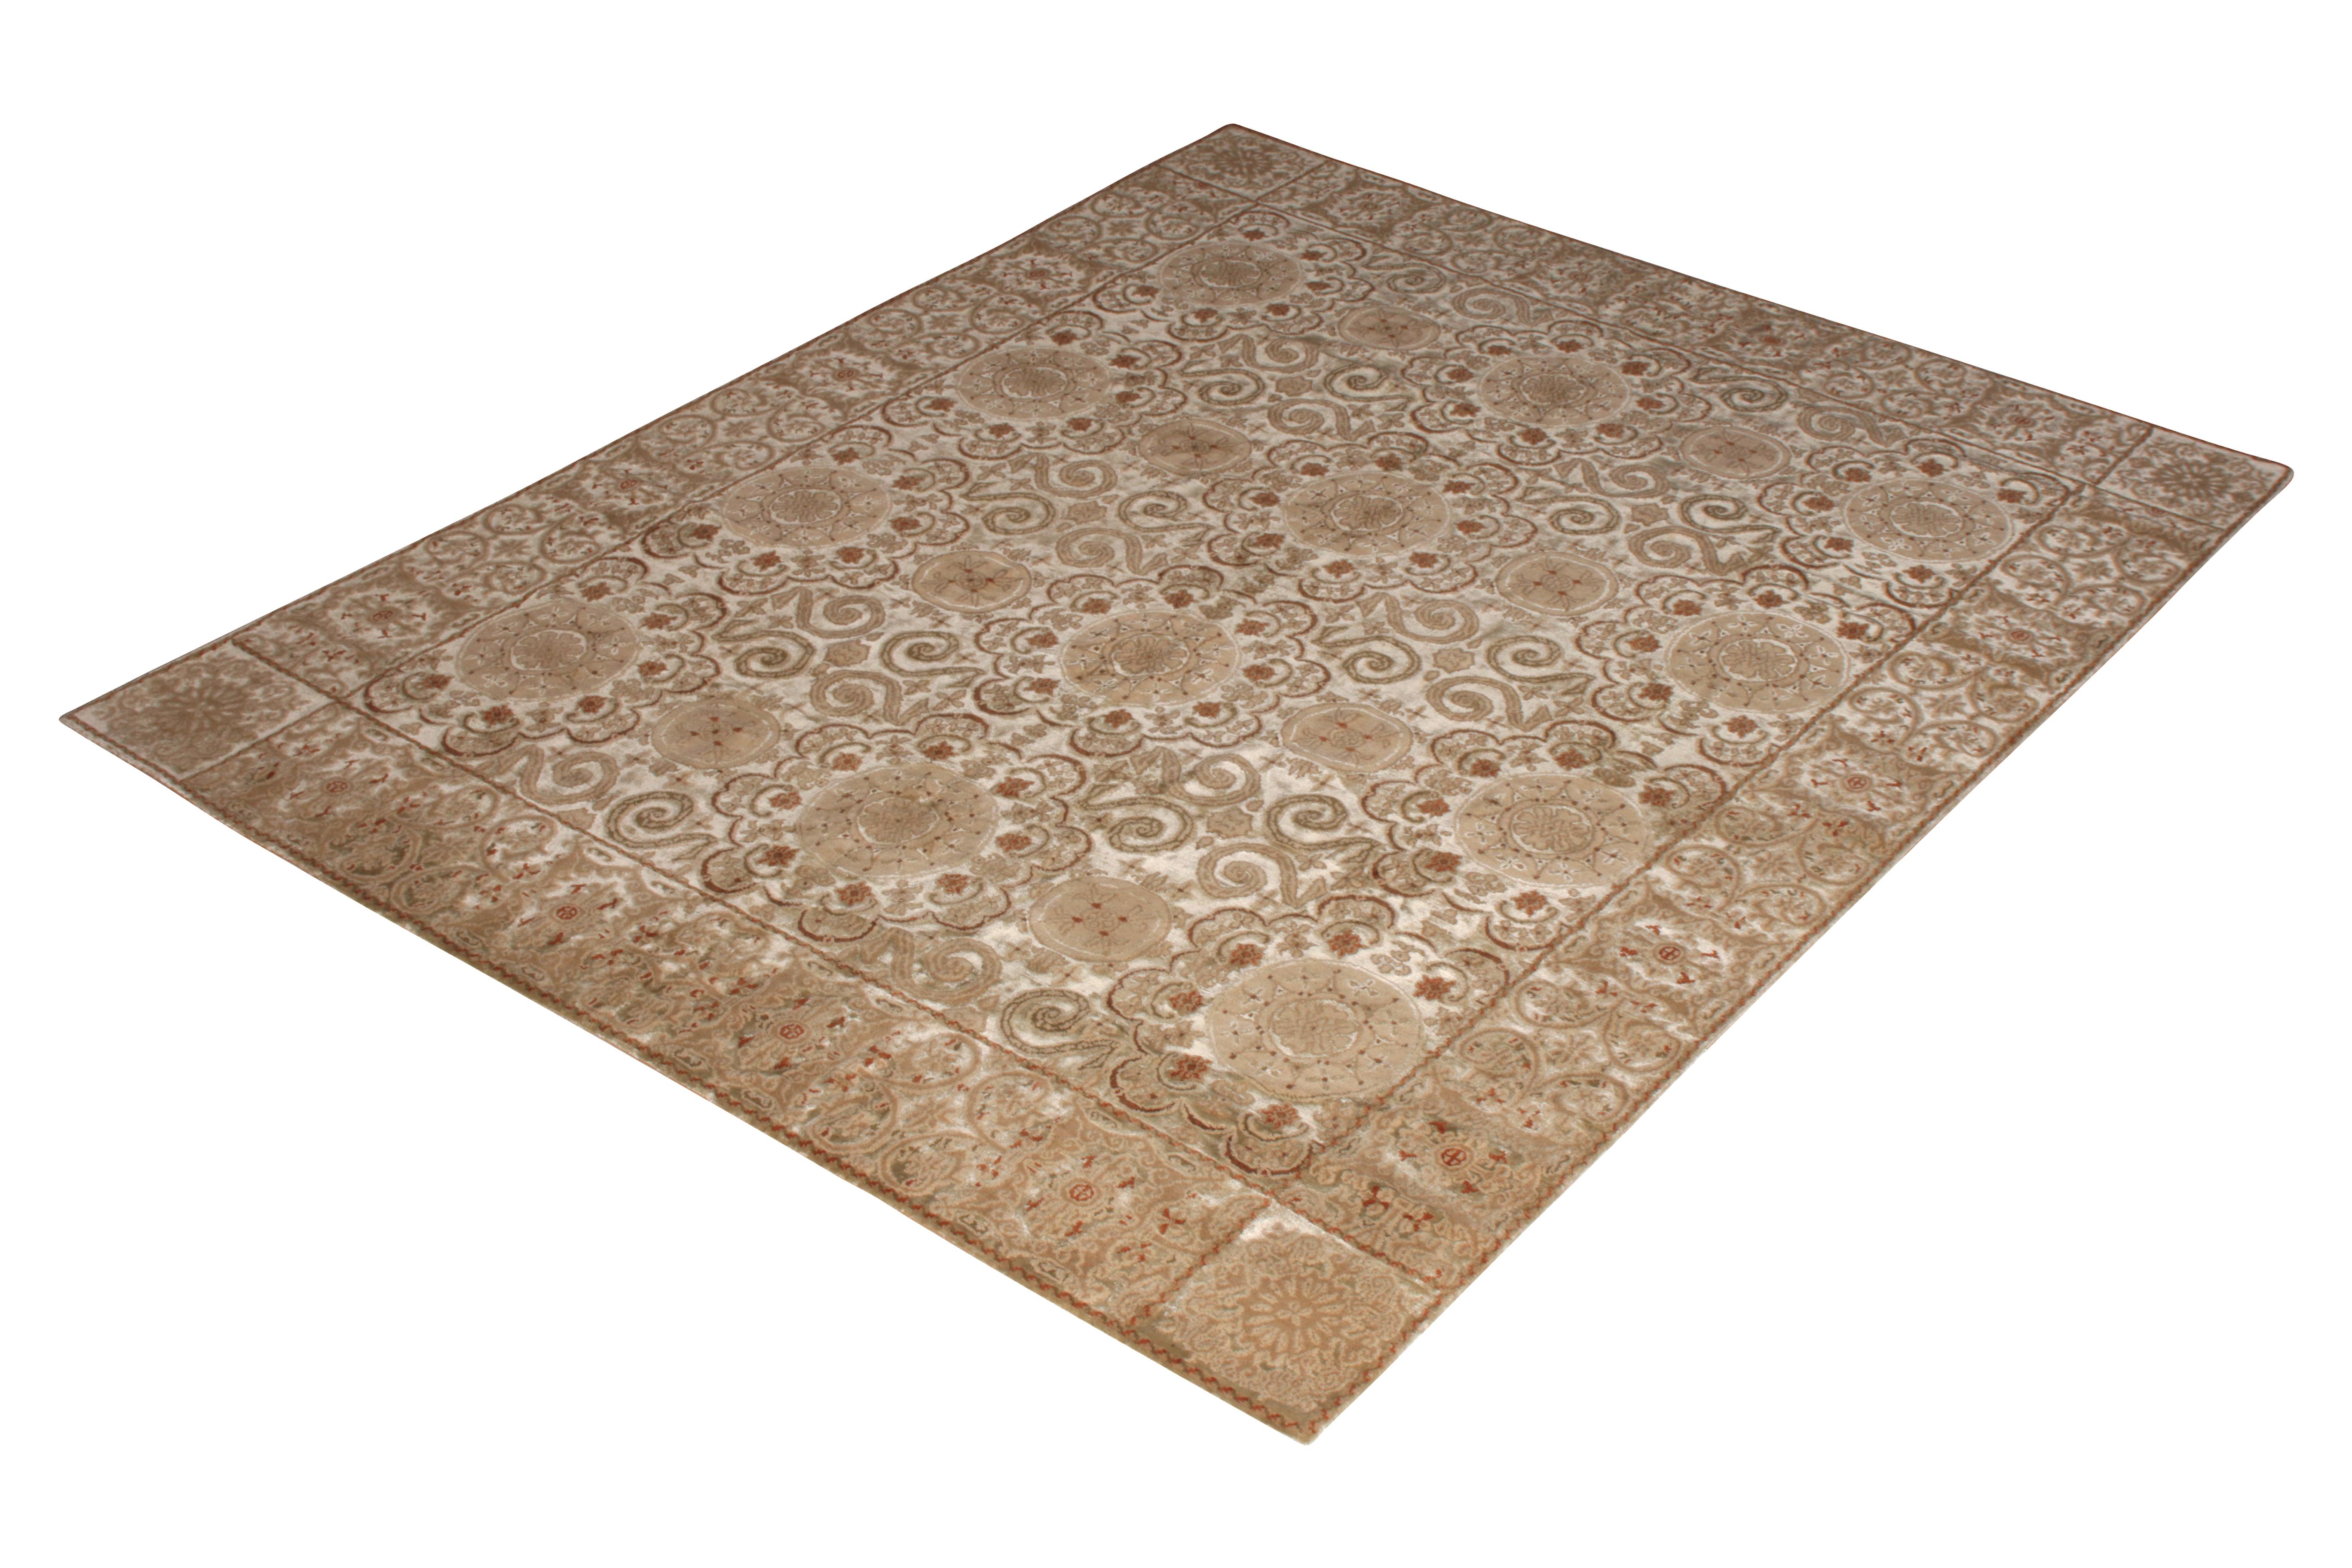 Dieser Teppich im Format 8 x 10 gehört zur europäischen Kollektion von Rug & Kilim, die sich von einer Vielzahl geometrischer Muster und neoklassizistischer Empfindsamkeiten inspirieren lässt und von den jüngsten Neuzugängen dieser Linie liebevoll